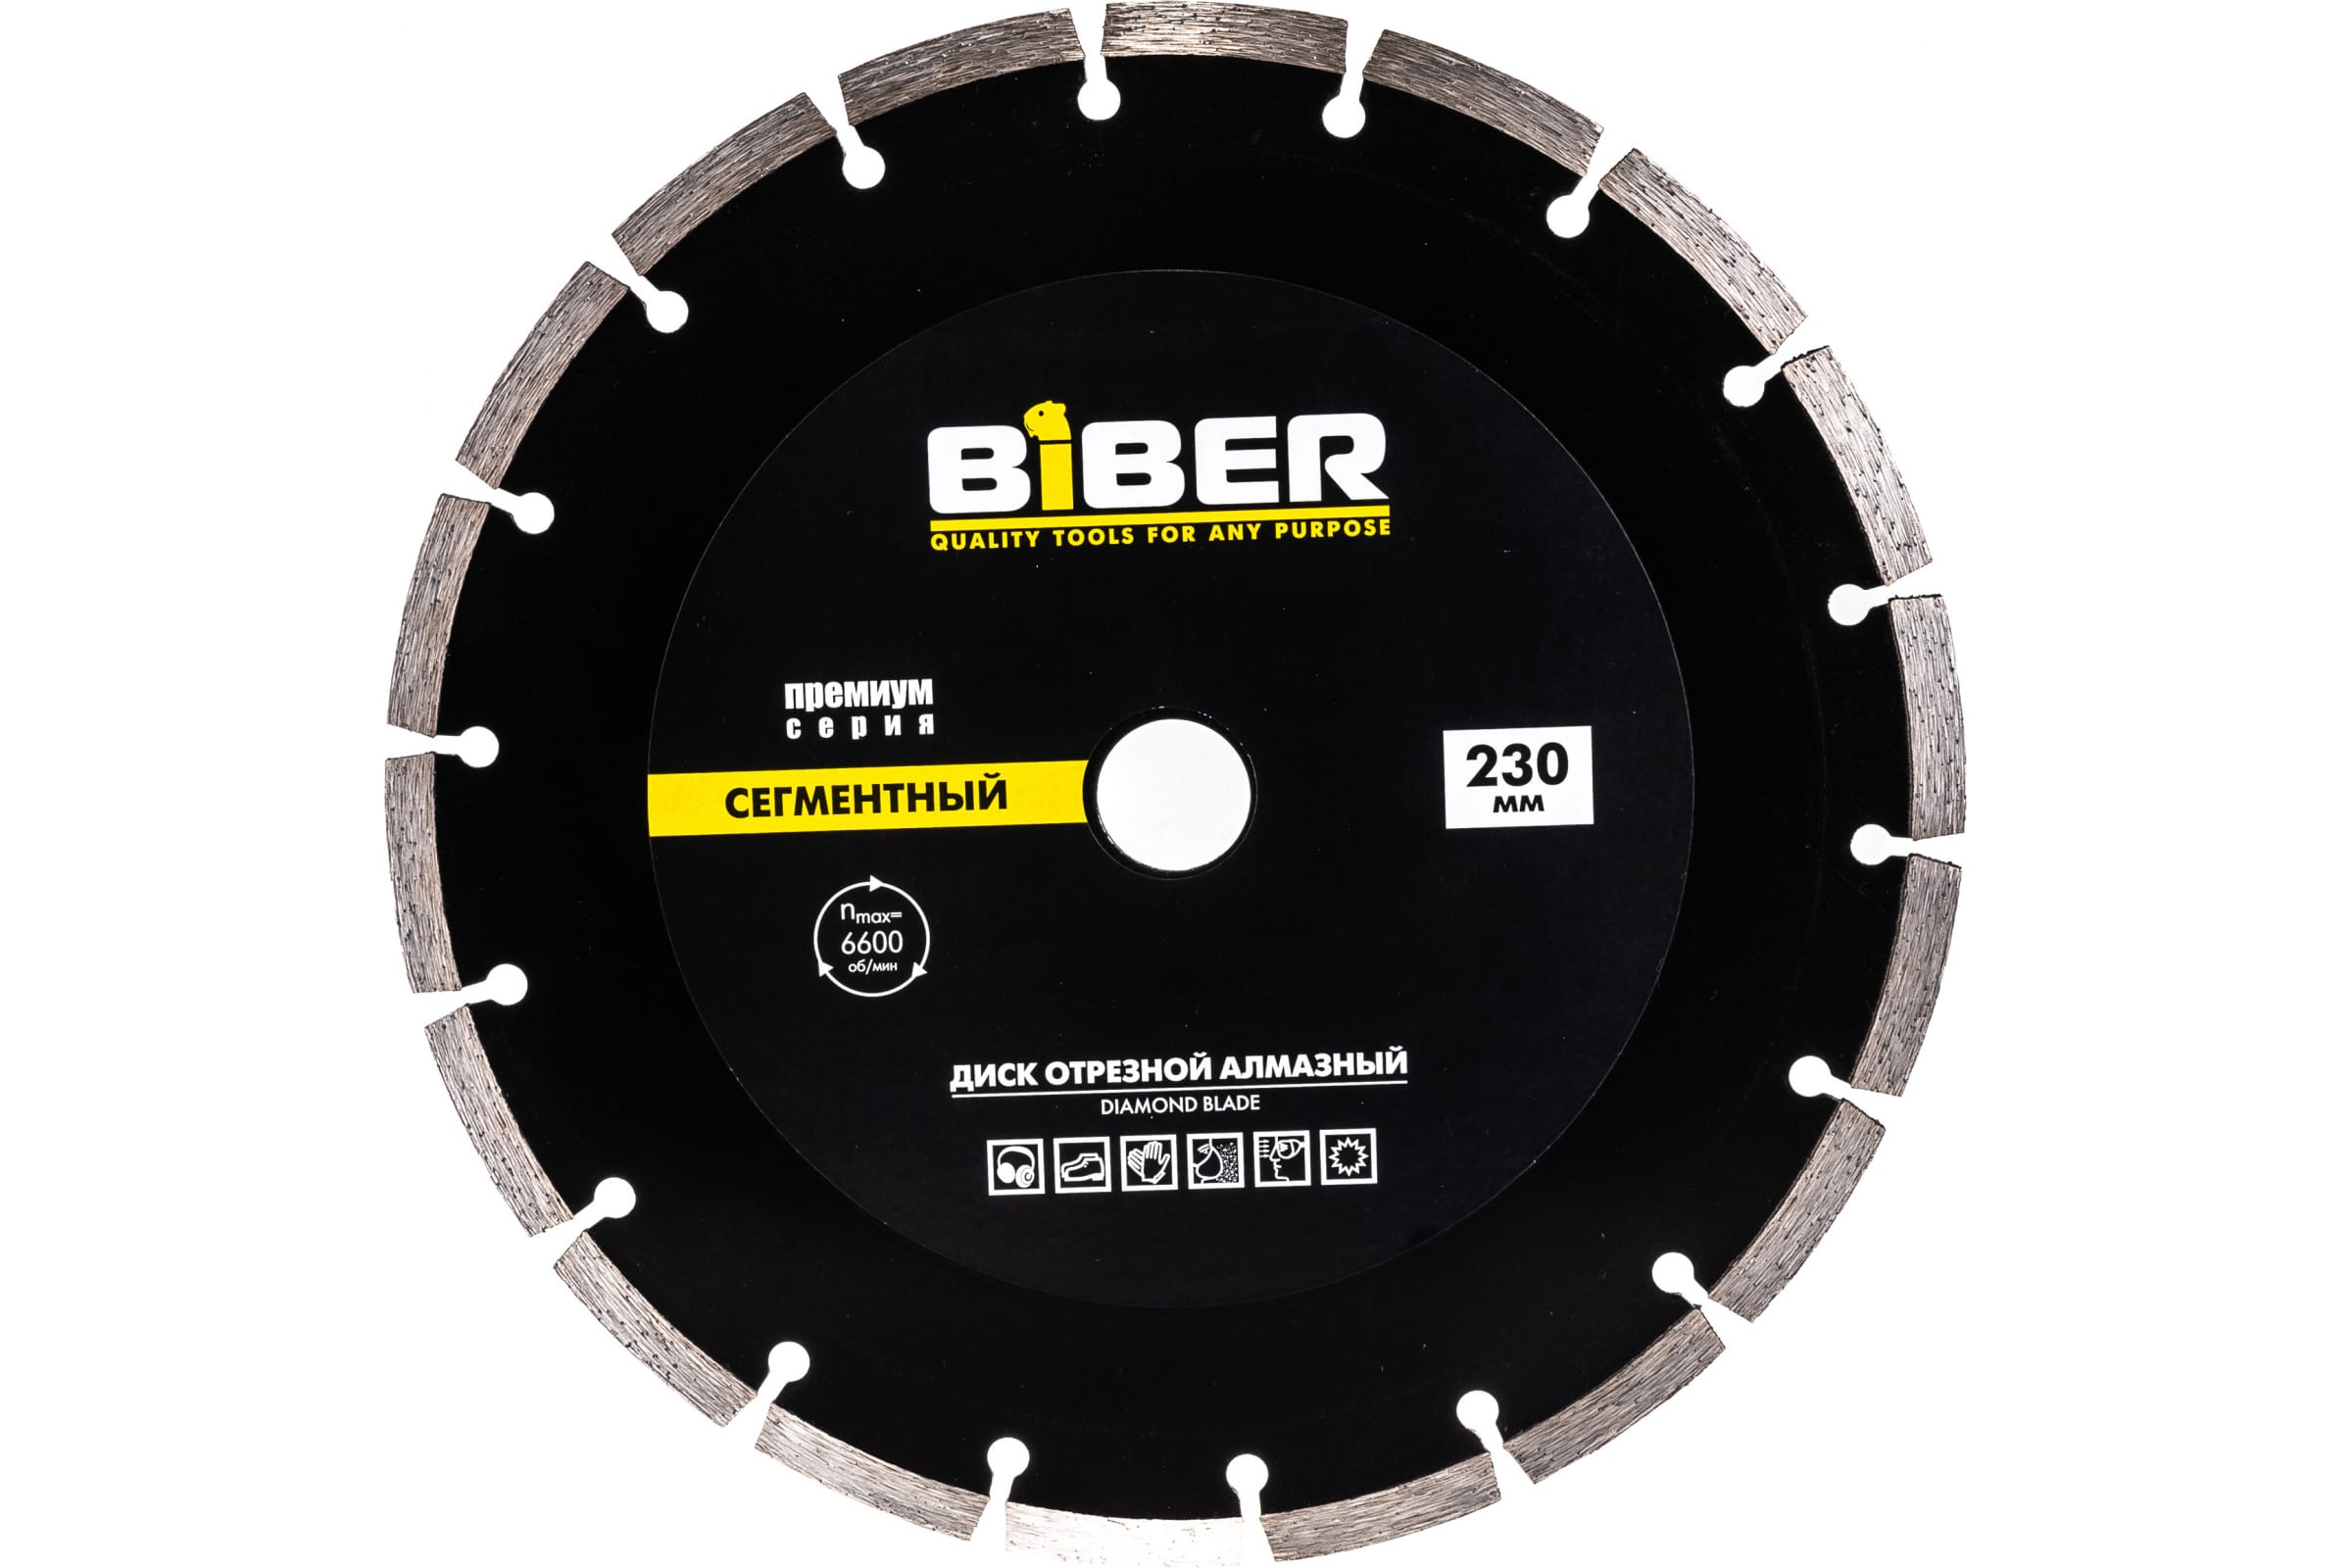 фото Biber диск алмазный сегментный премиум 230мм 70266 тов-039554